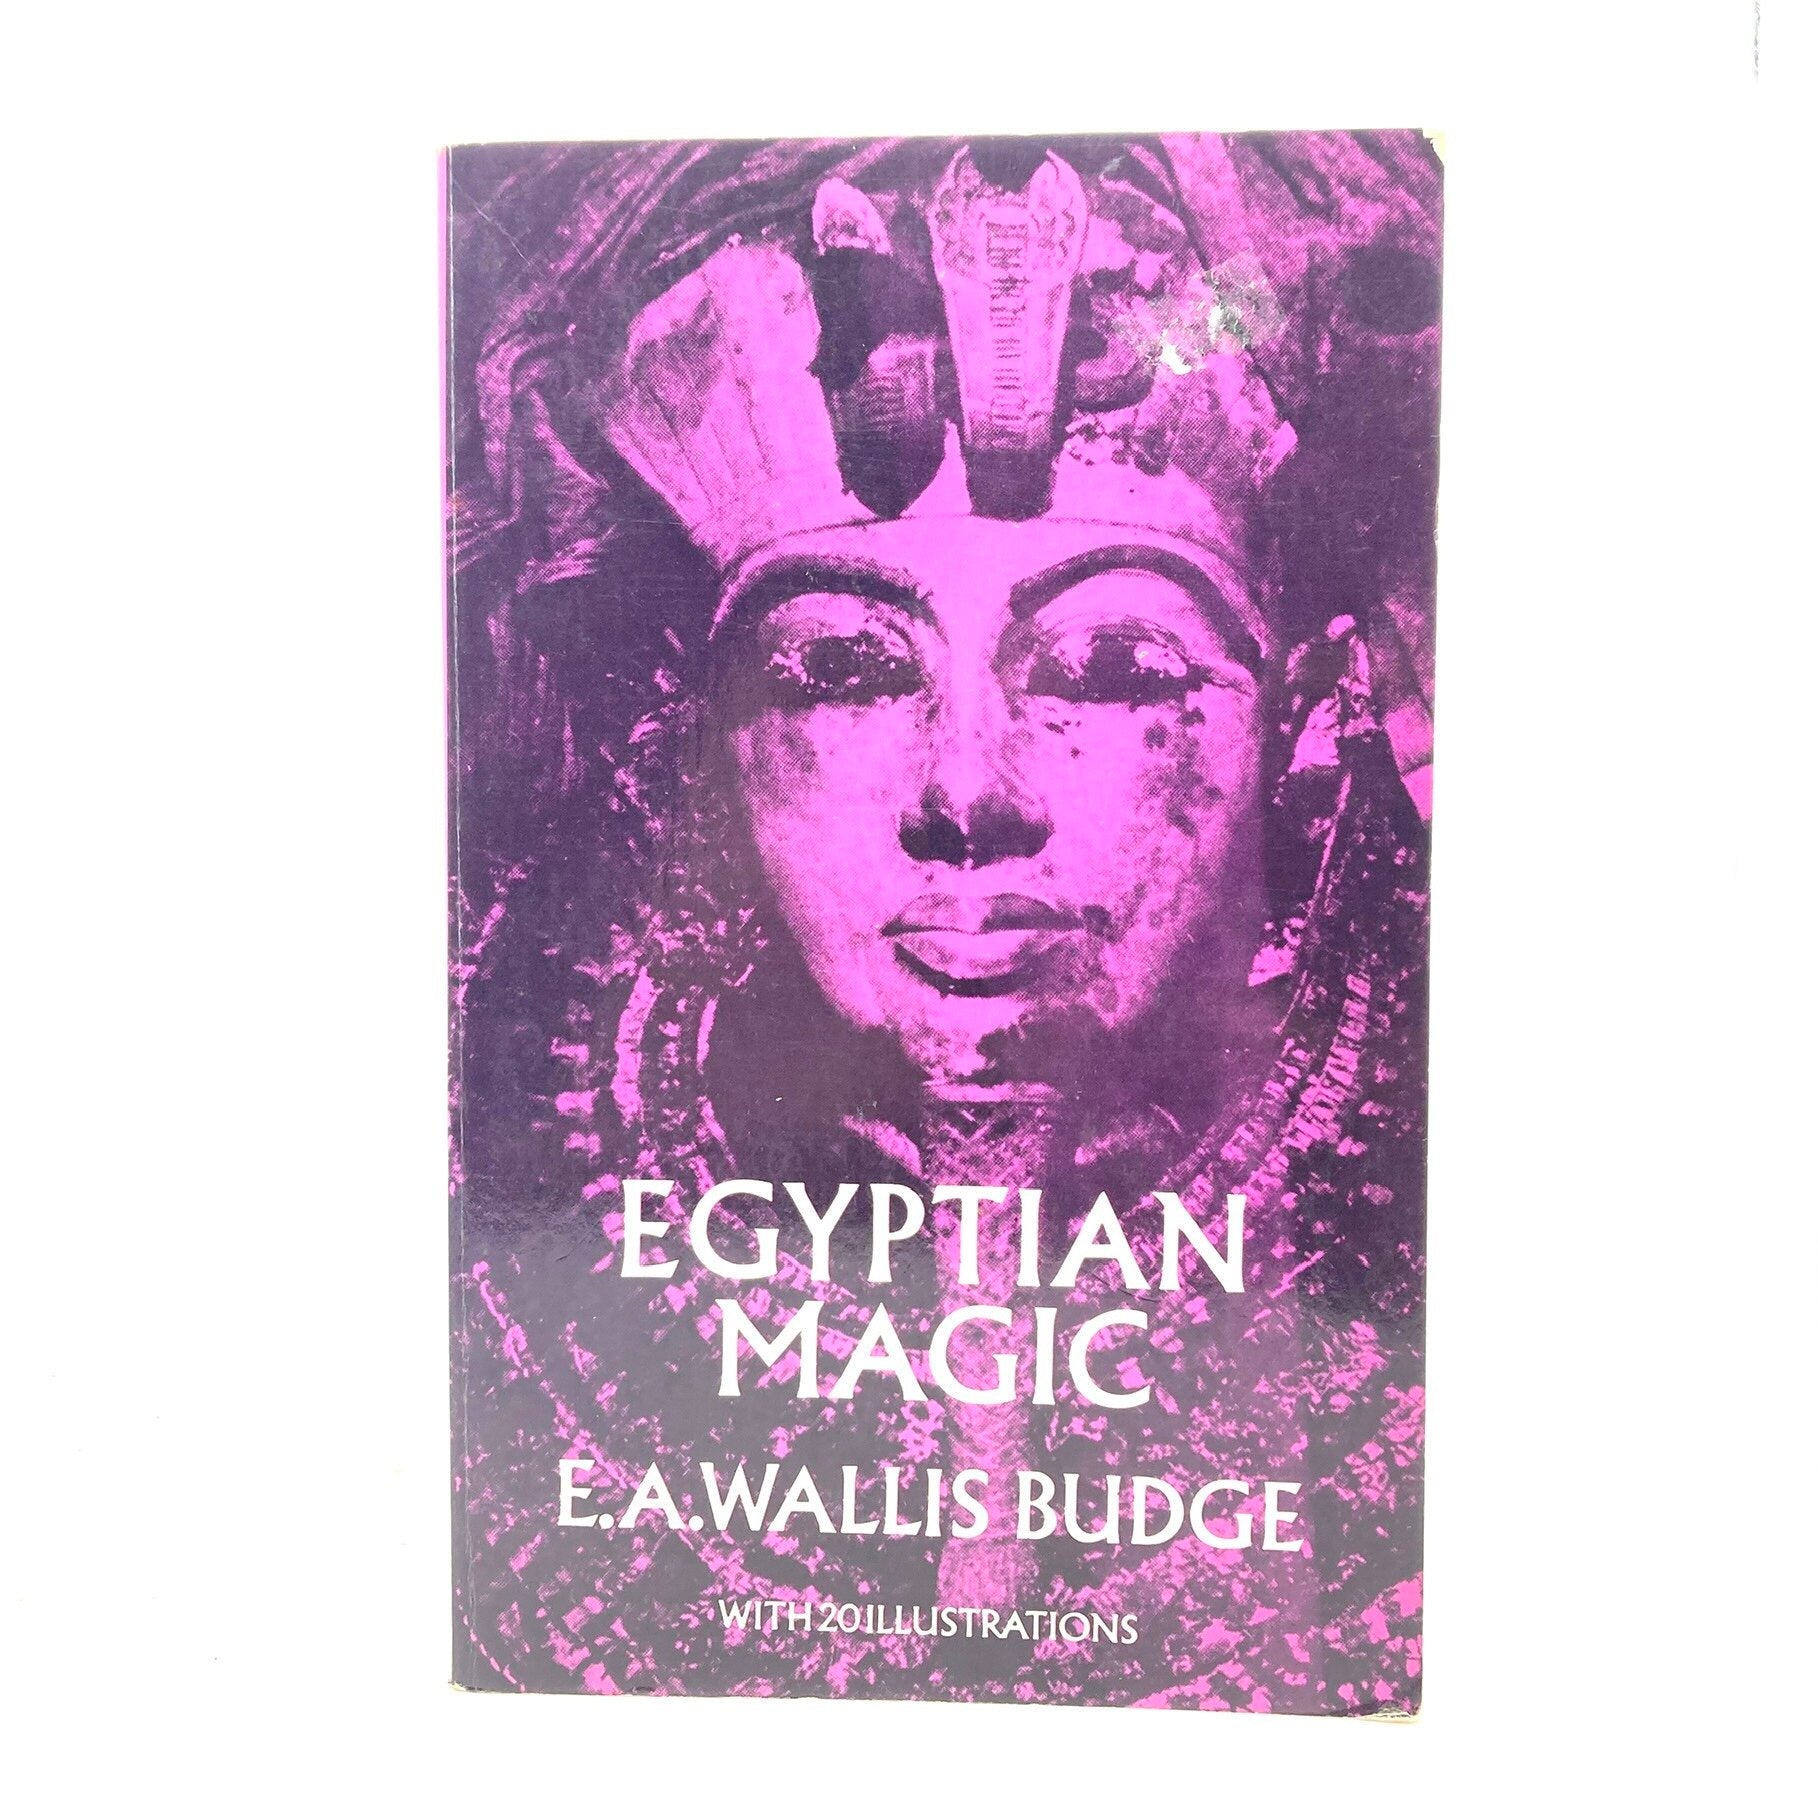 BUDGE, E.A. Wallis "Egyptian Magic" [Dover, 1971] - Buzz Bookstore